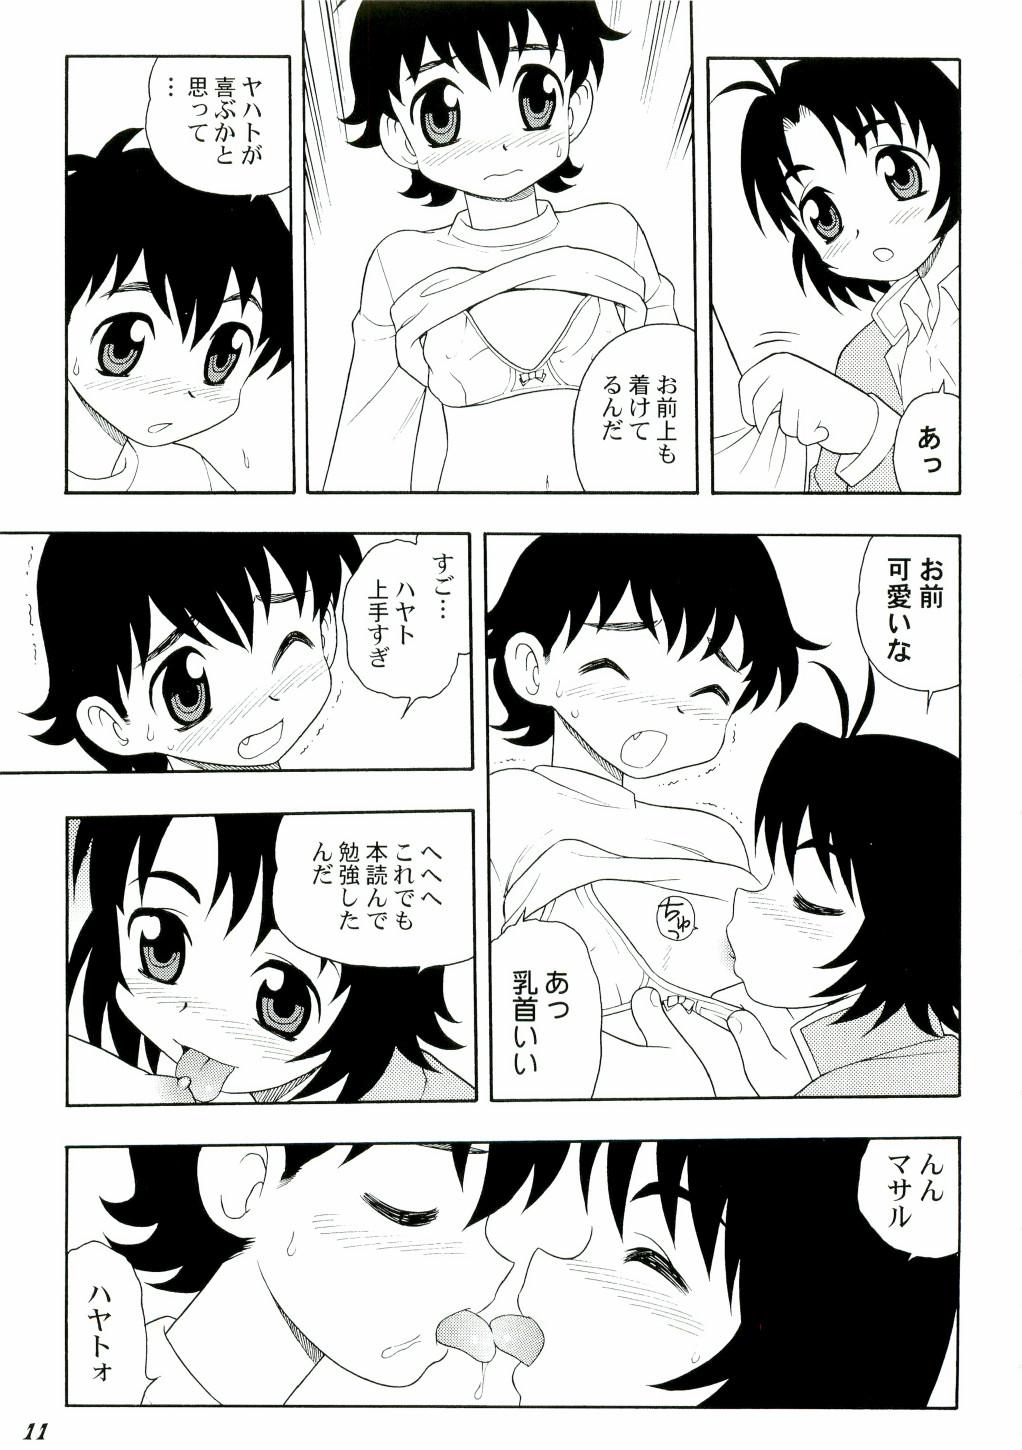 Freeteenporn Shot a Shota 3 - Tenchi muyo Bigtits - Page 11